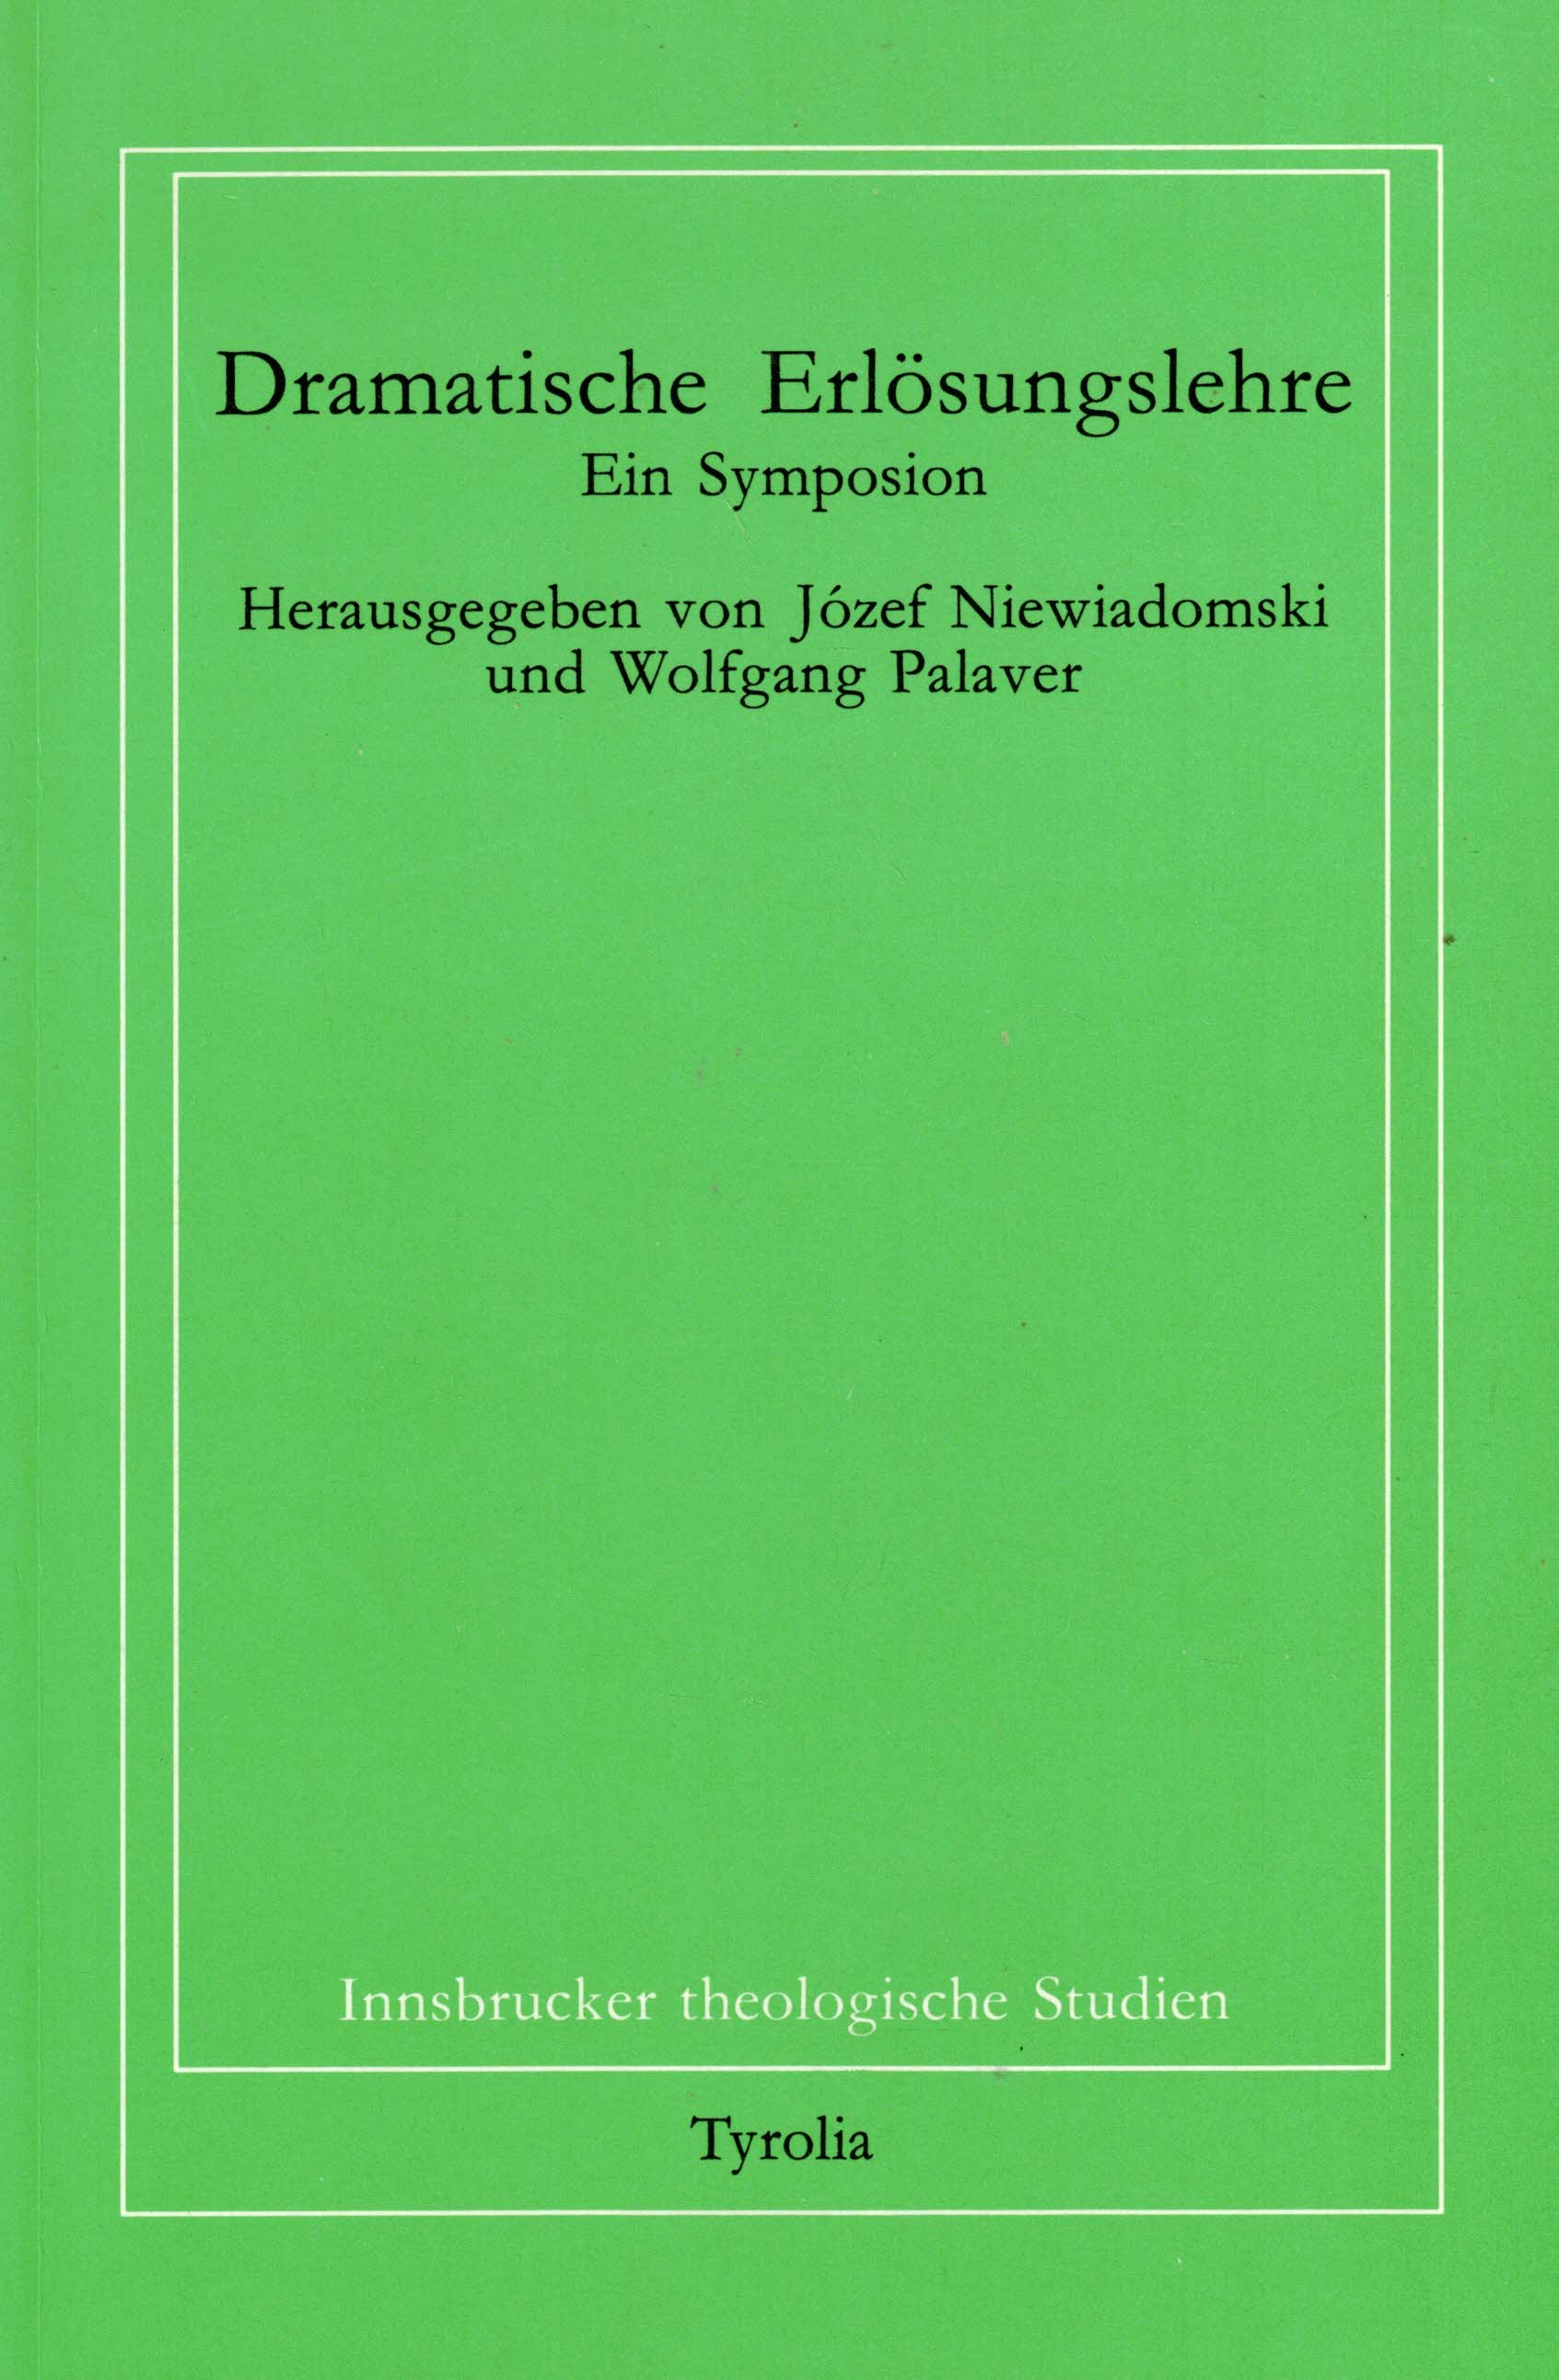 Dramatische Erlösungslehre. Ein Symposion (Innsbrucker theologische Studien Band 38) - Niewiadomski, Jozef; Palaver, Wolfgang